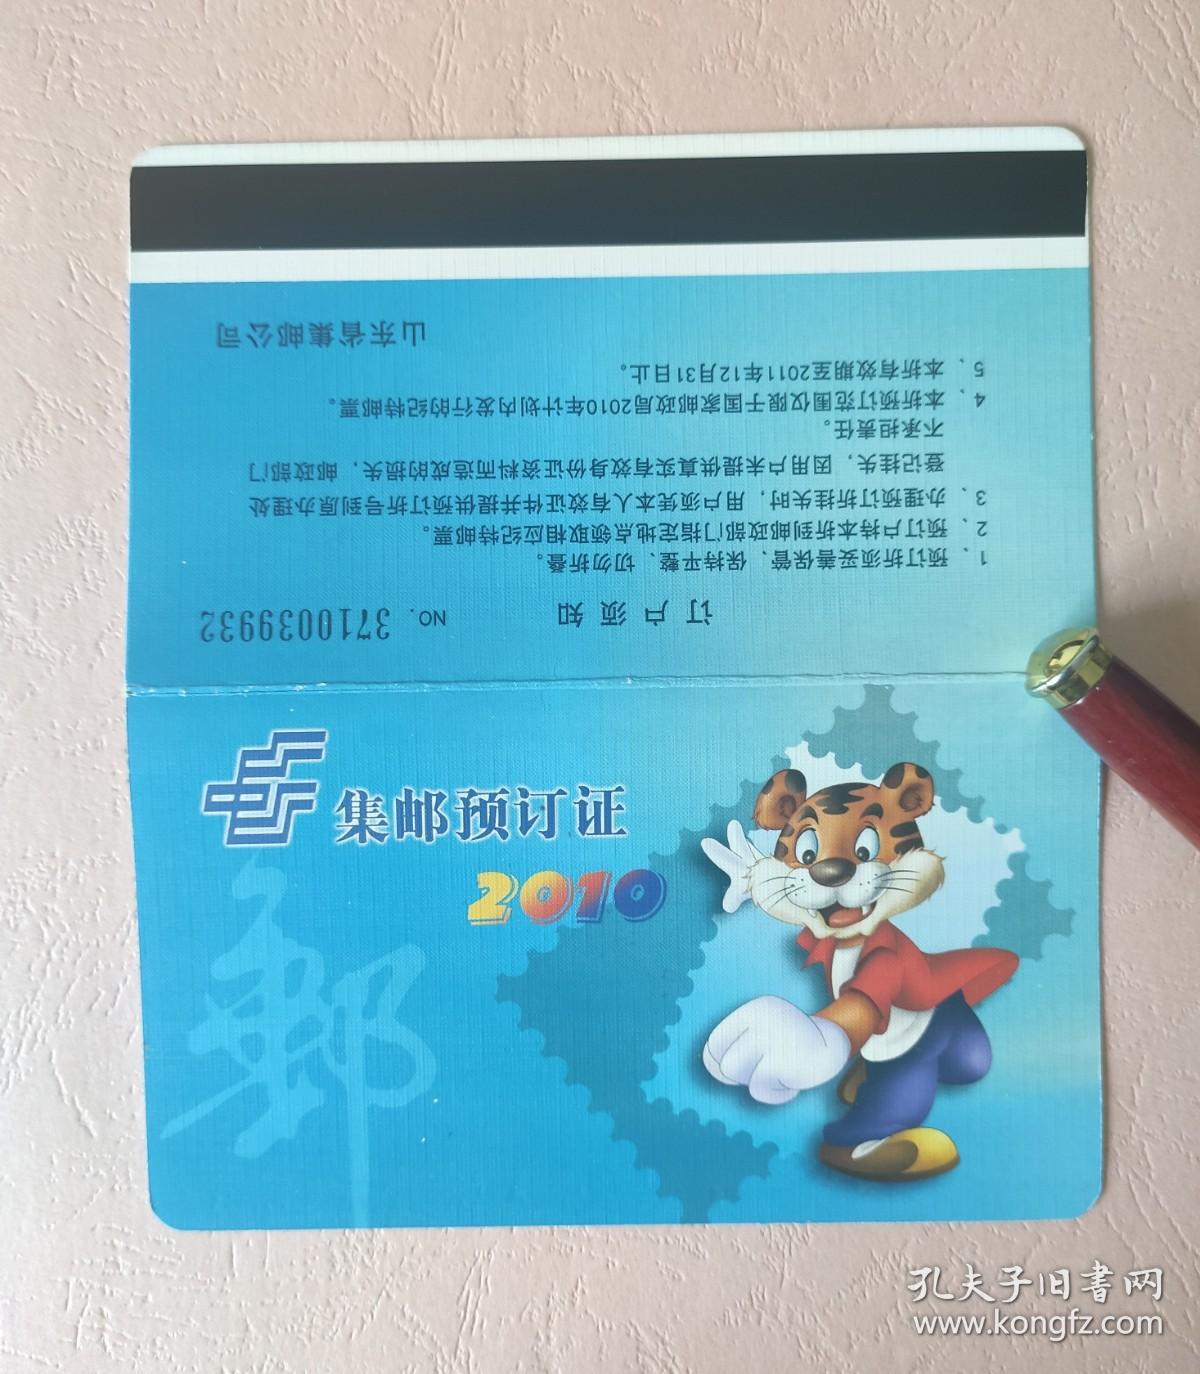 2010年集邮预订证一本  中国邮政 山东省集邮公司  新邮预订证  邮票预订折  邮资封片预订（已经用过）  尺寸长14厘米、宽8厘米。 品相如图，二手物品，售出不退。   票证收藏    B6盒 39932